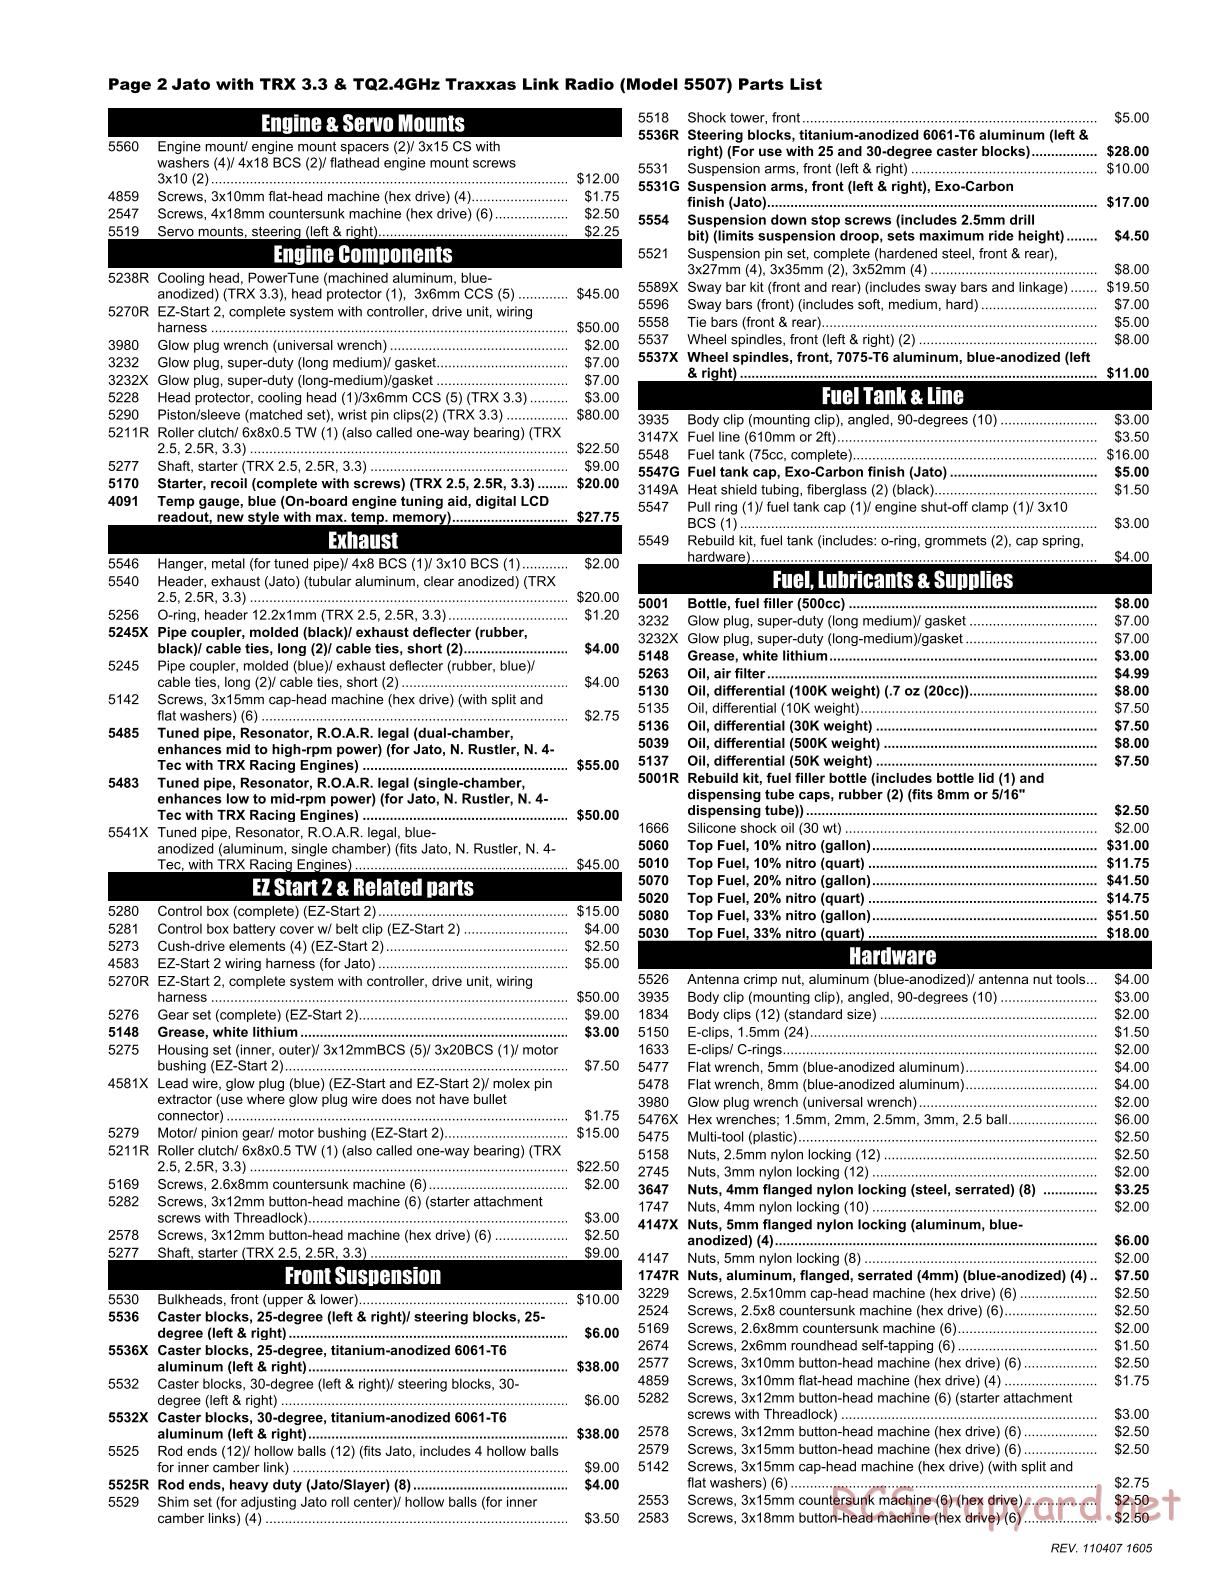 Traxxas - Jato 3.3 (2010) - Parts List - Page 2